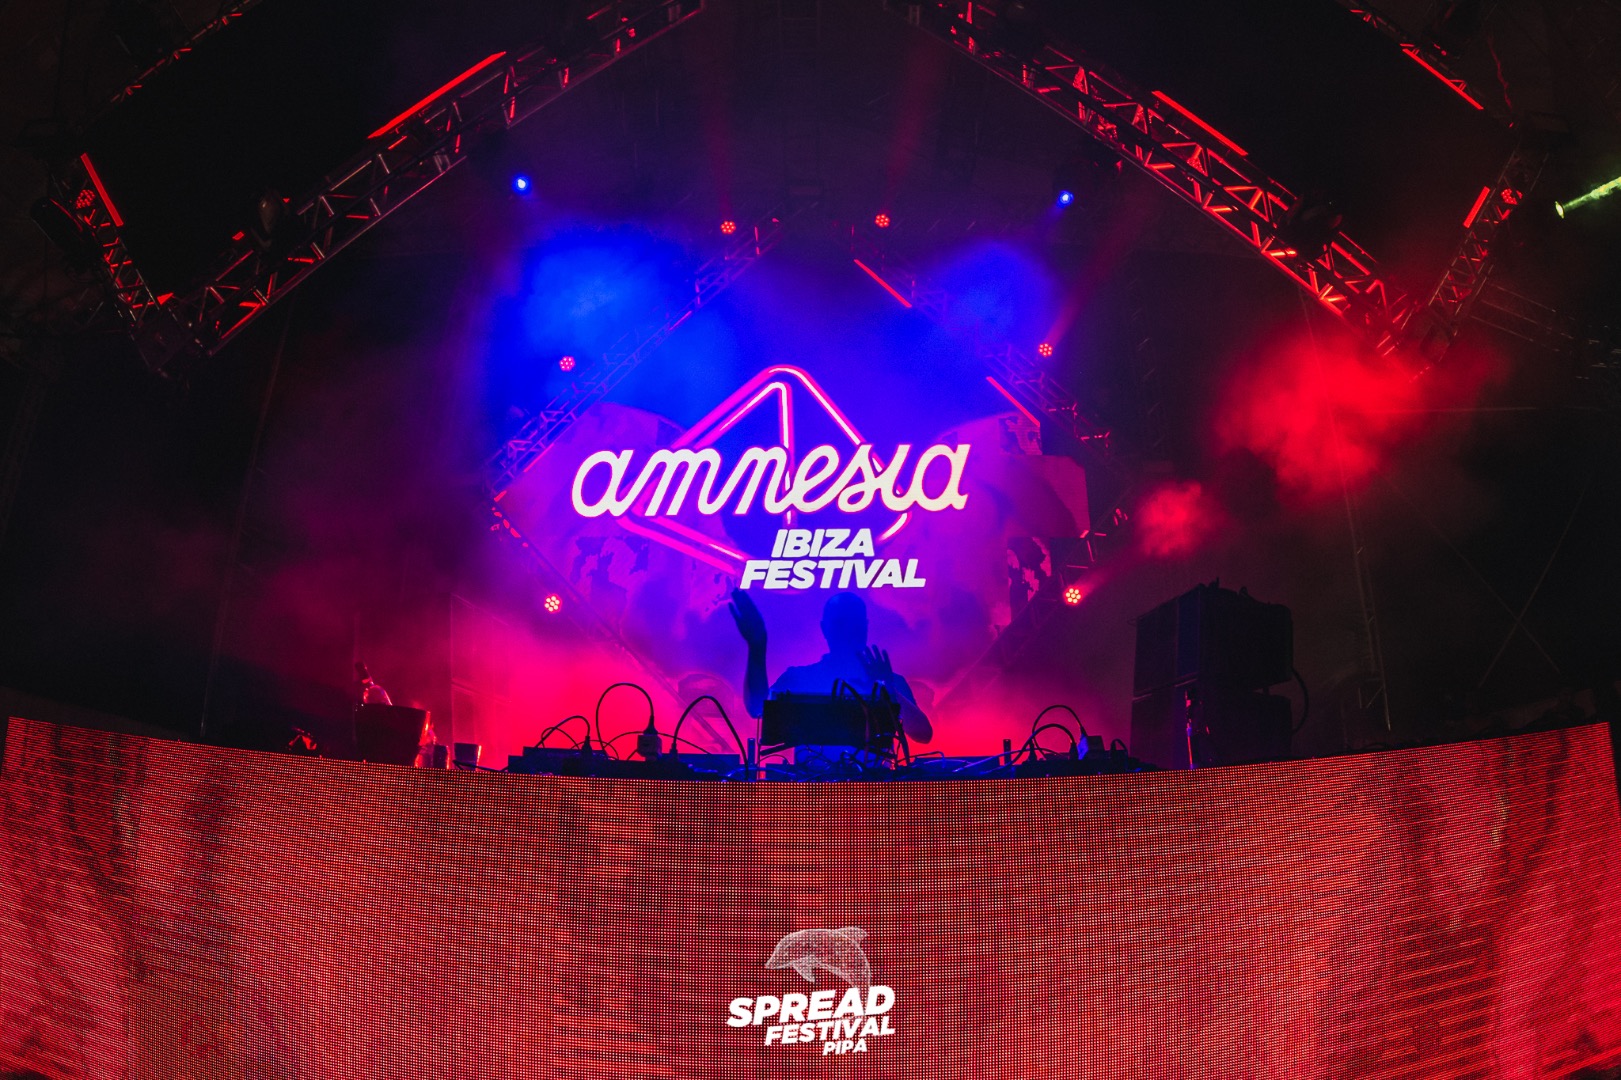 Amnesia goes to Spread Festival